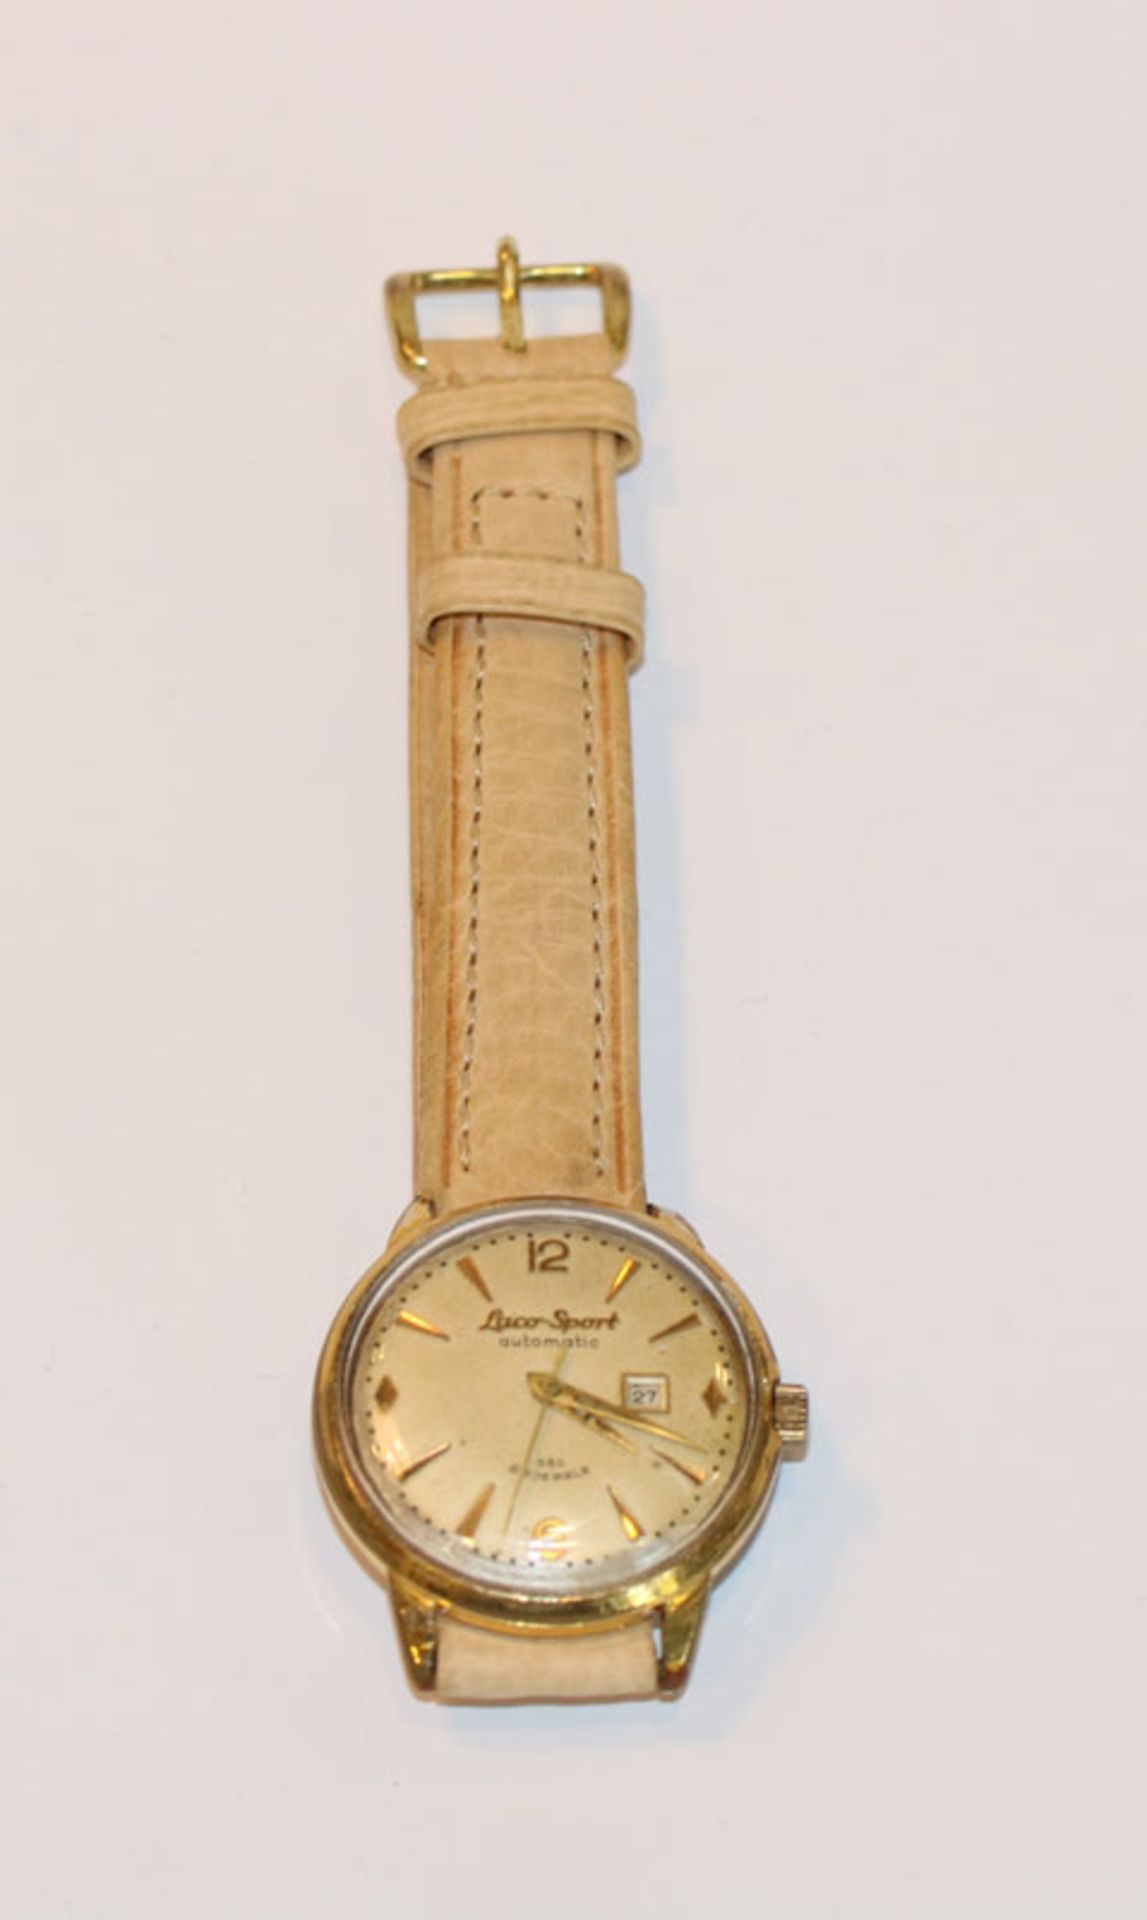 Laco-Sport automatic, 580, 25 Jewels, Herren-Armbanduhr mit Datumsanzeige, Pforzheim um 1955,